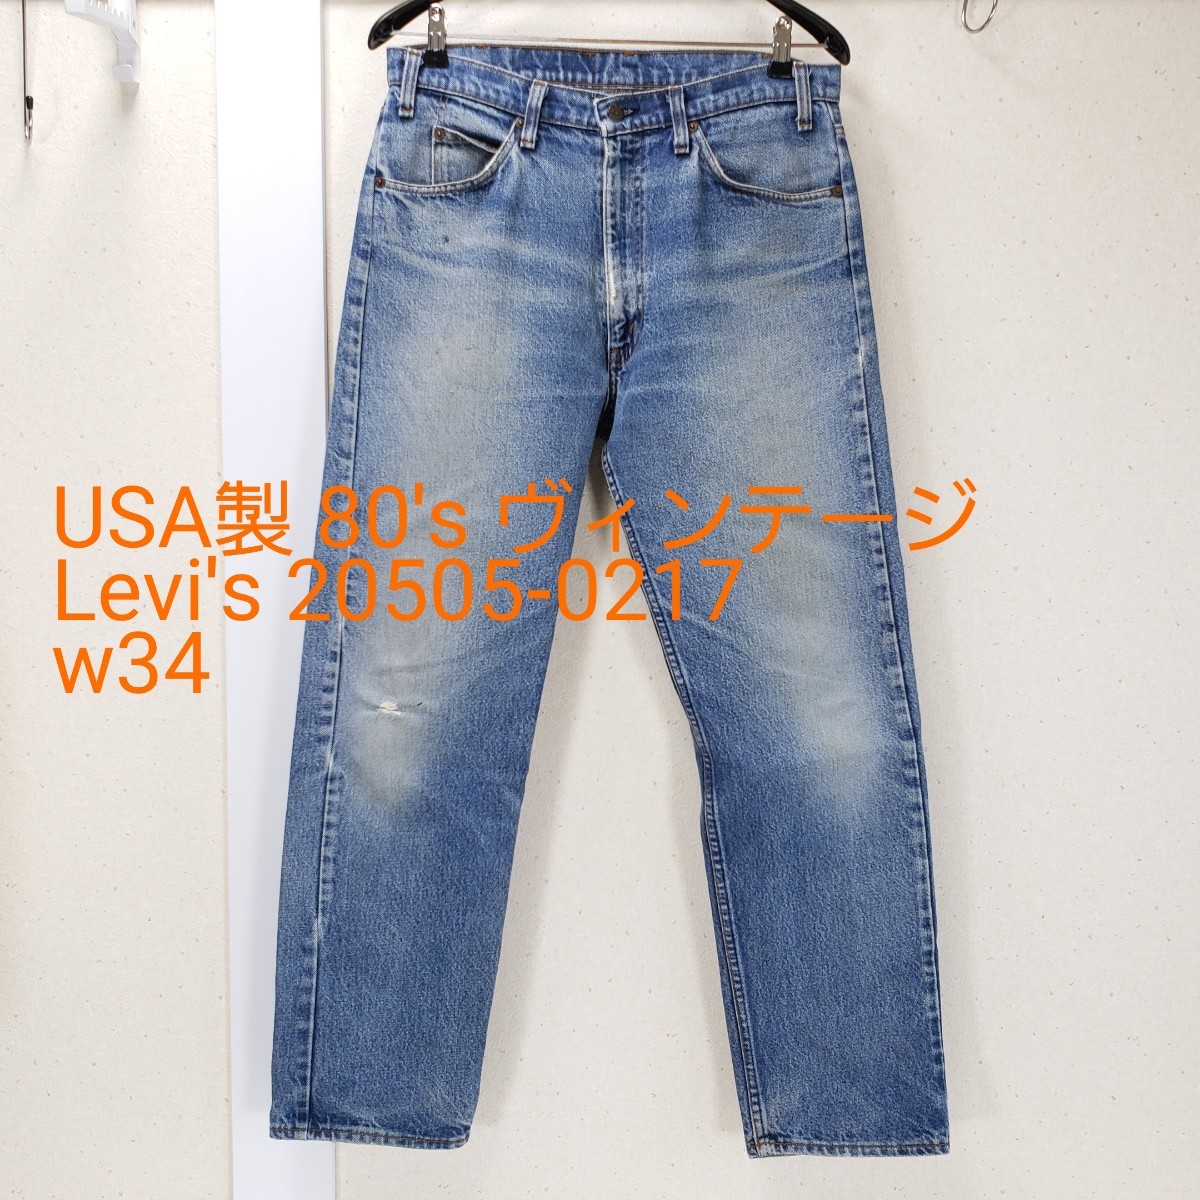 希少◆USA製 80's ヴィンテージ Levi's リーバイス 20505-0217 ジーンズ デニム オレンジタブ(W34×L31)色落ち最高